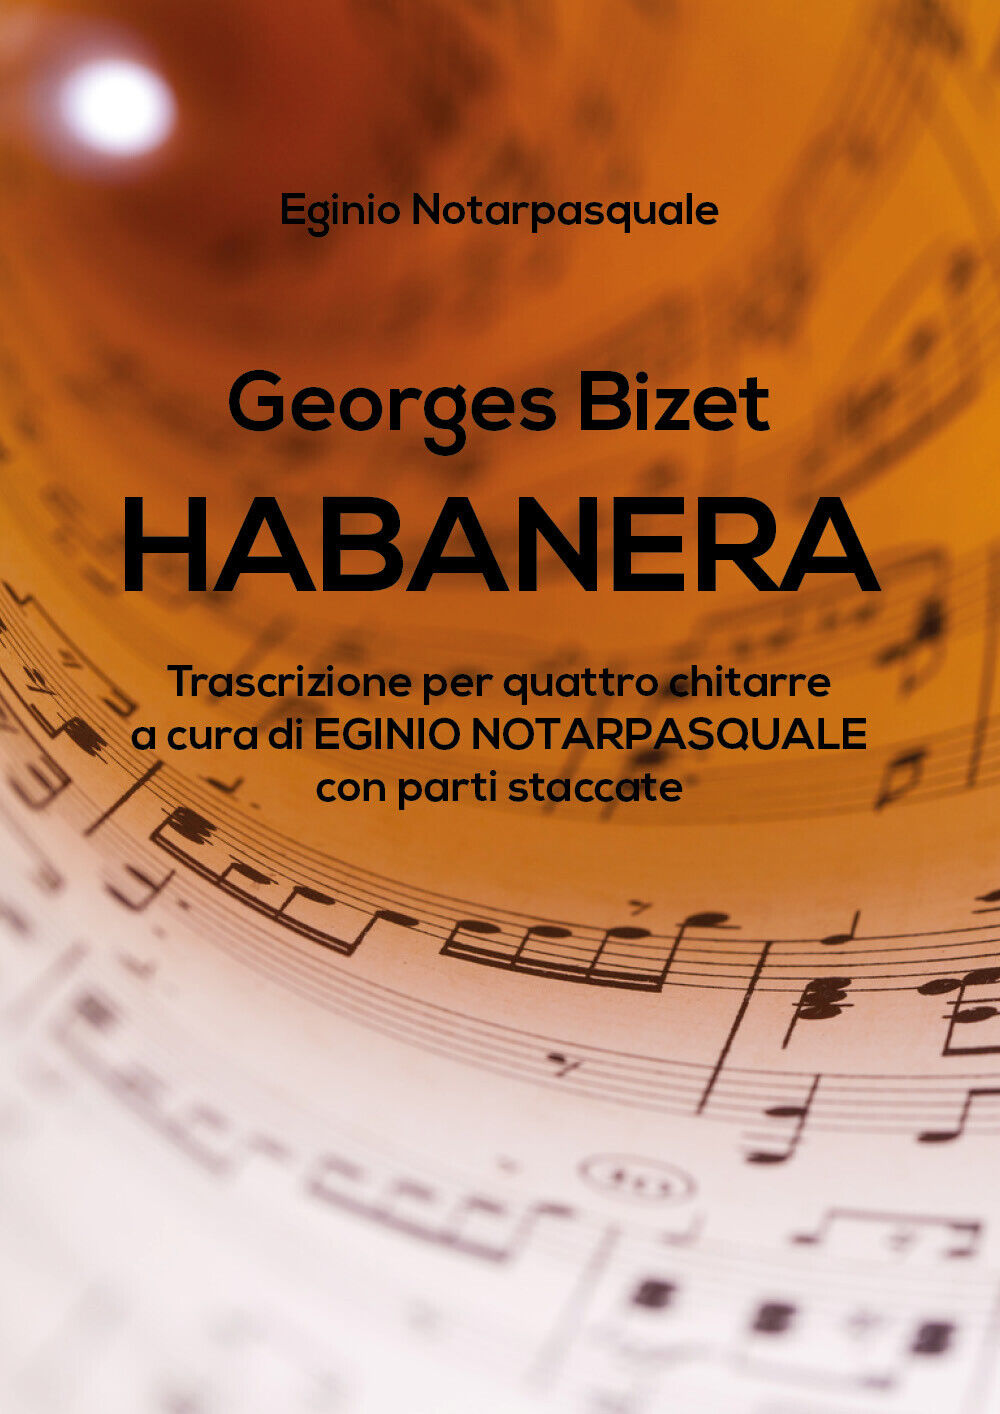 Georges Bizet HABANERA trascrizione per quattro chitarre a cura di EGINIO NOTARP